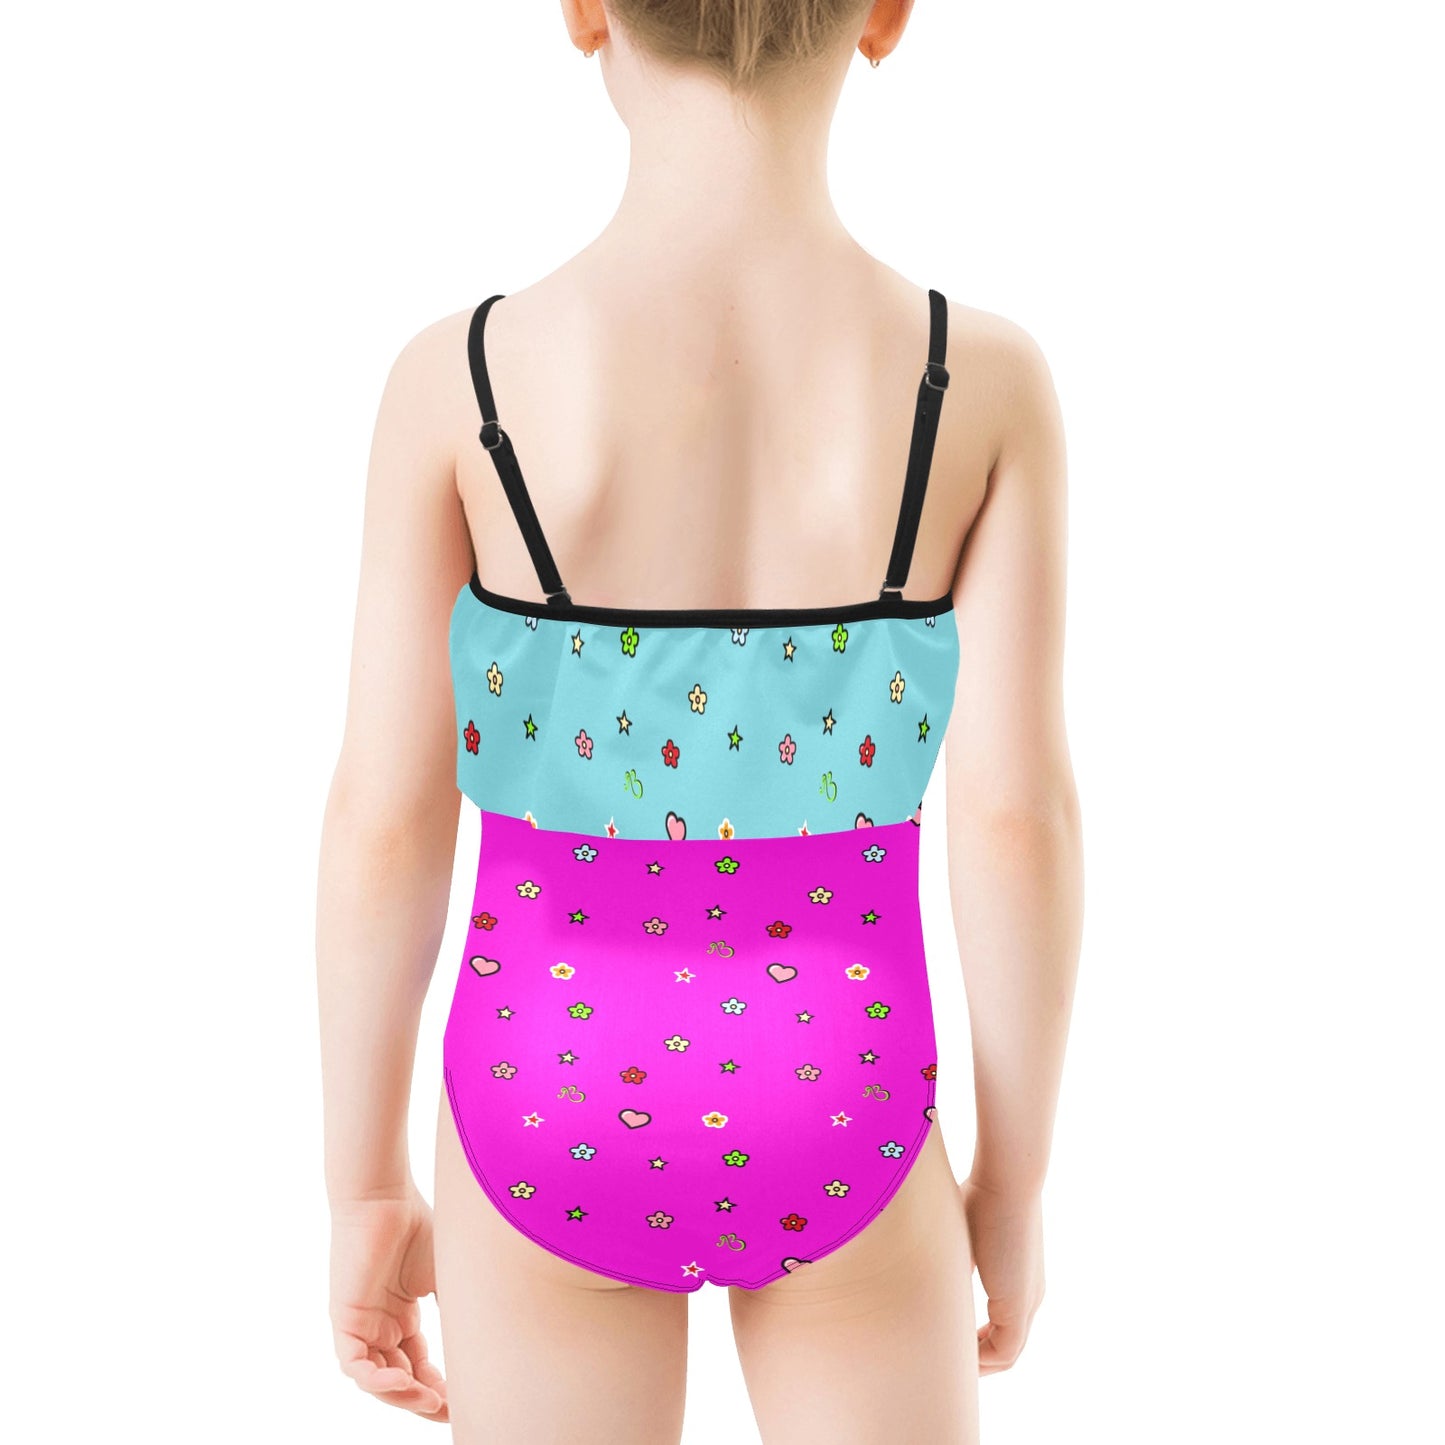 AfriBix Love Heart Girls Ruffle Kids Swimsuit - Pink and Blue